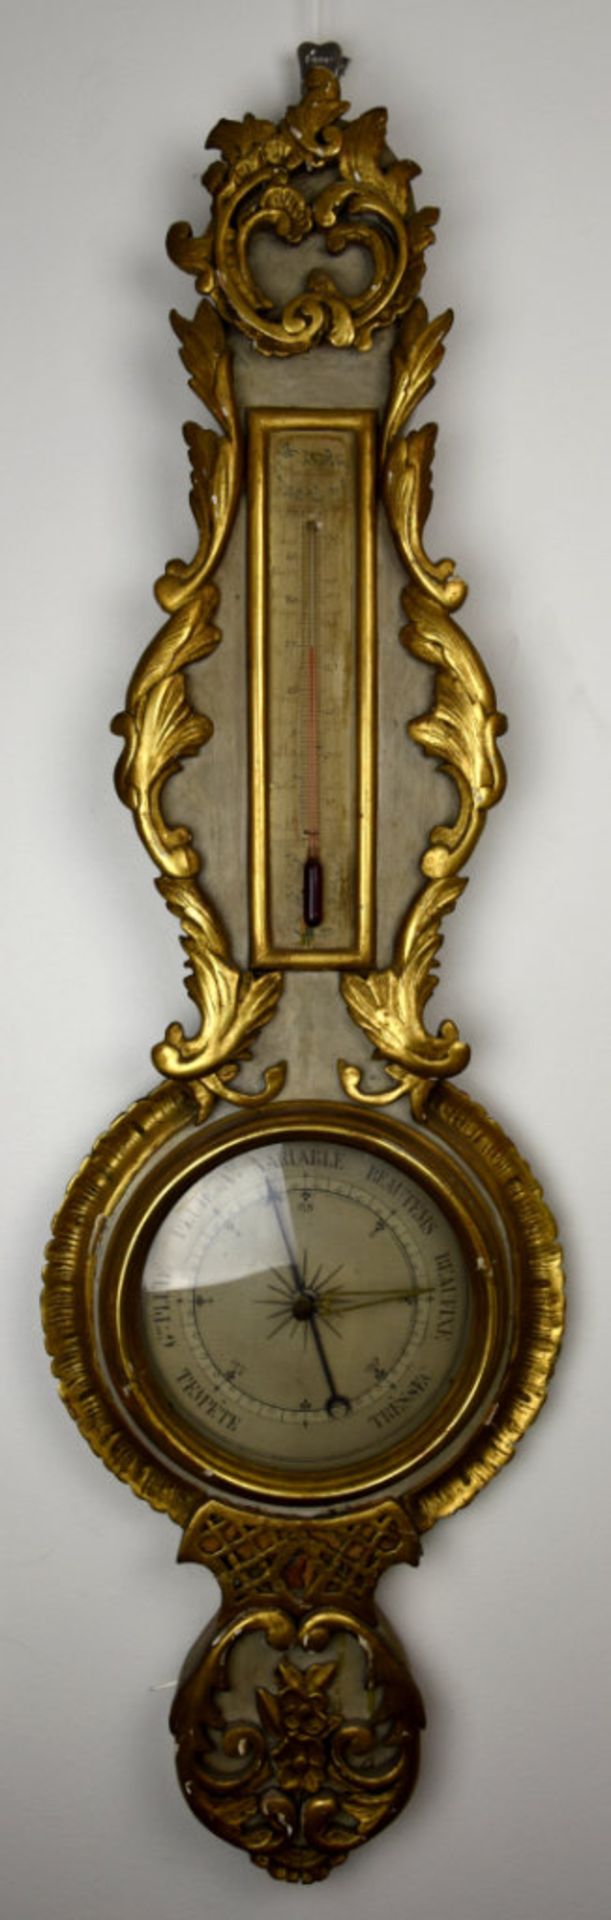 Baromètre-thermomètre, France, XIXe - En bois doré, baromètre à mercure à [...] - Image 3 of 3